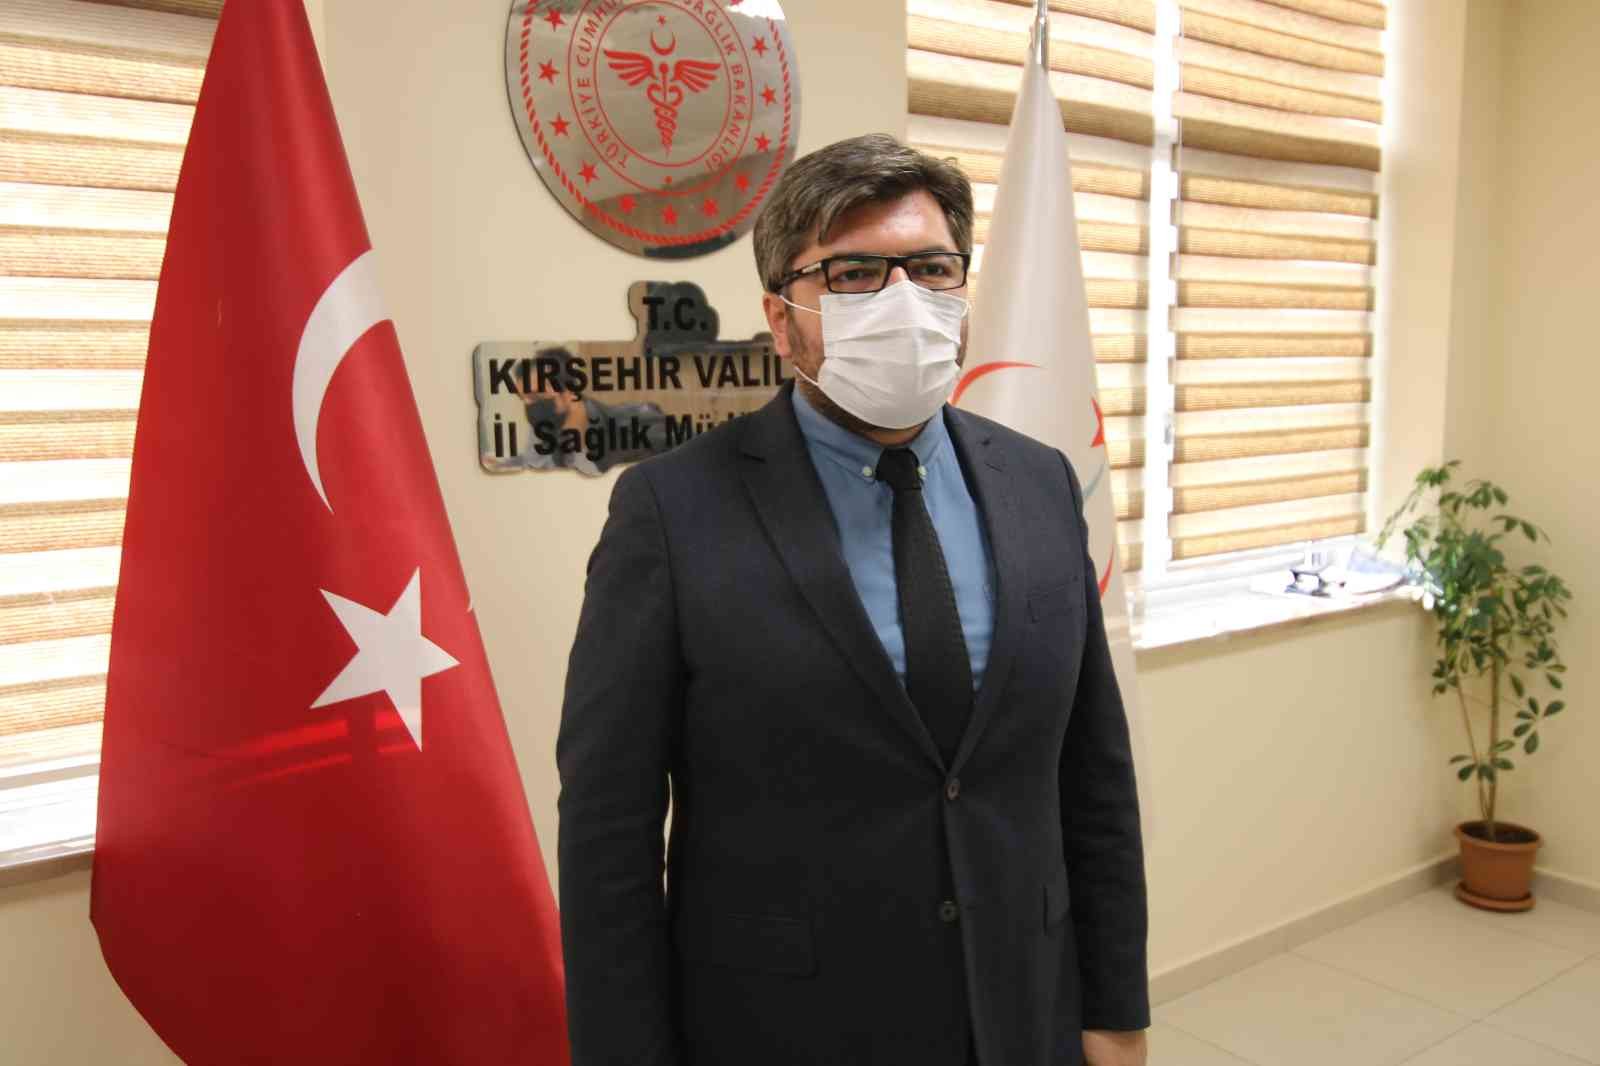 Kırşehir’de toplamda 380 bin doz aşı yapıldı #kirsehir